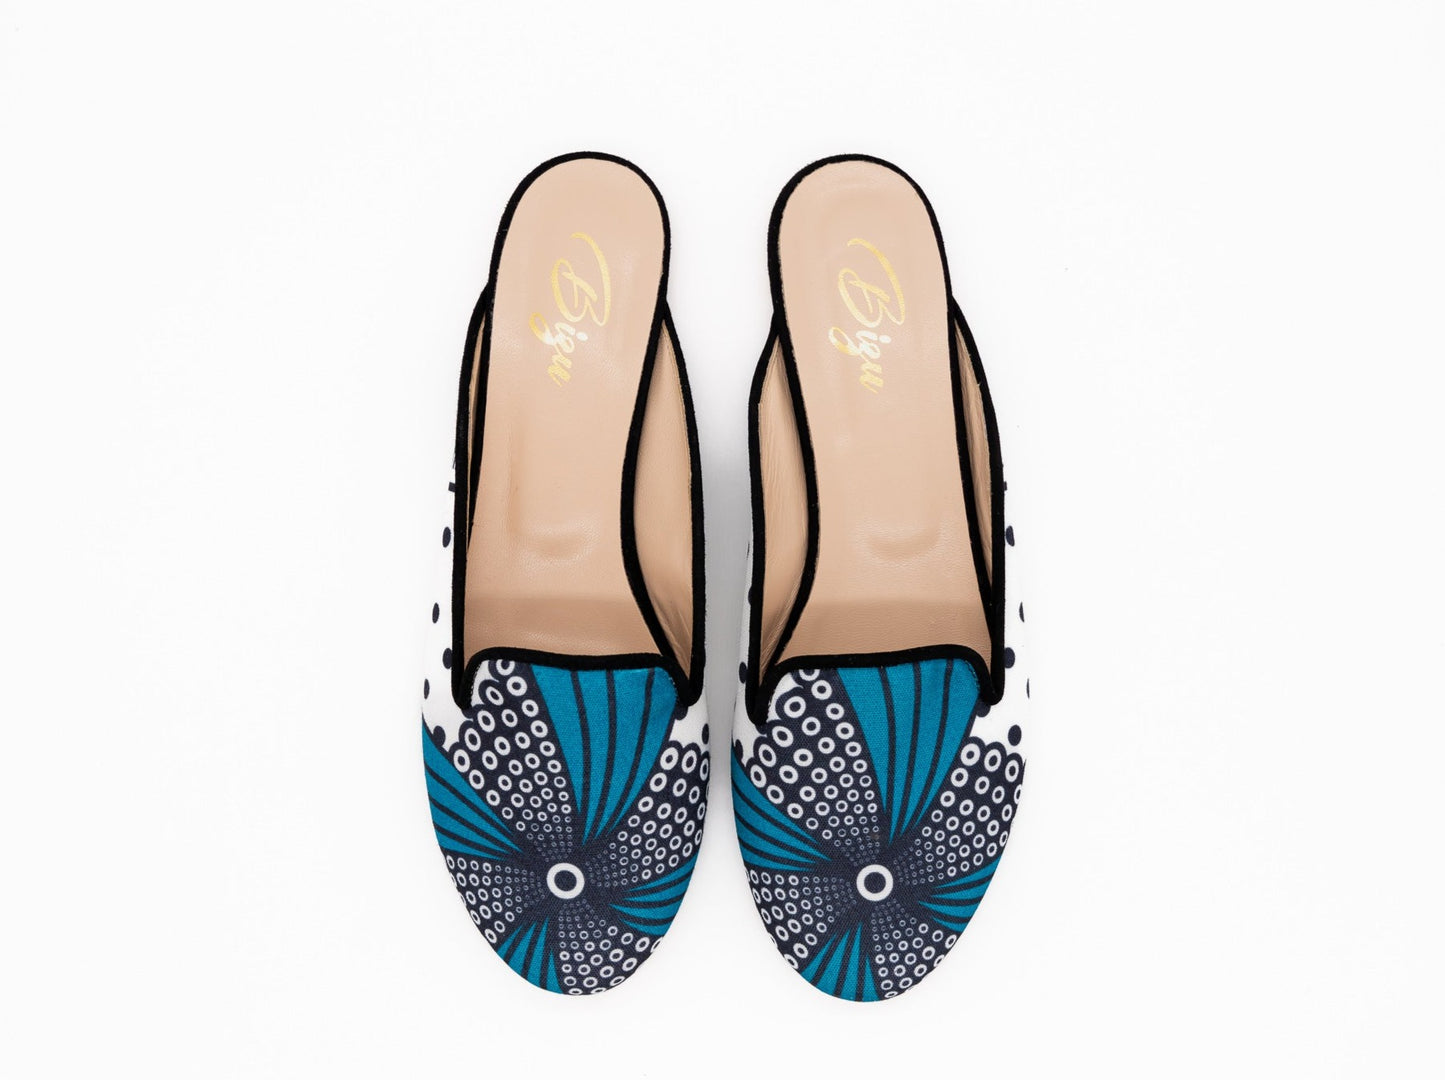 Zawadi Mule shoes with bold patterns